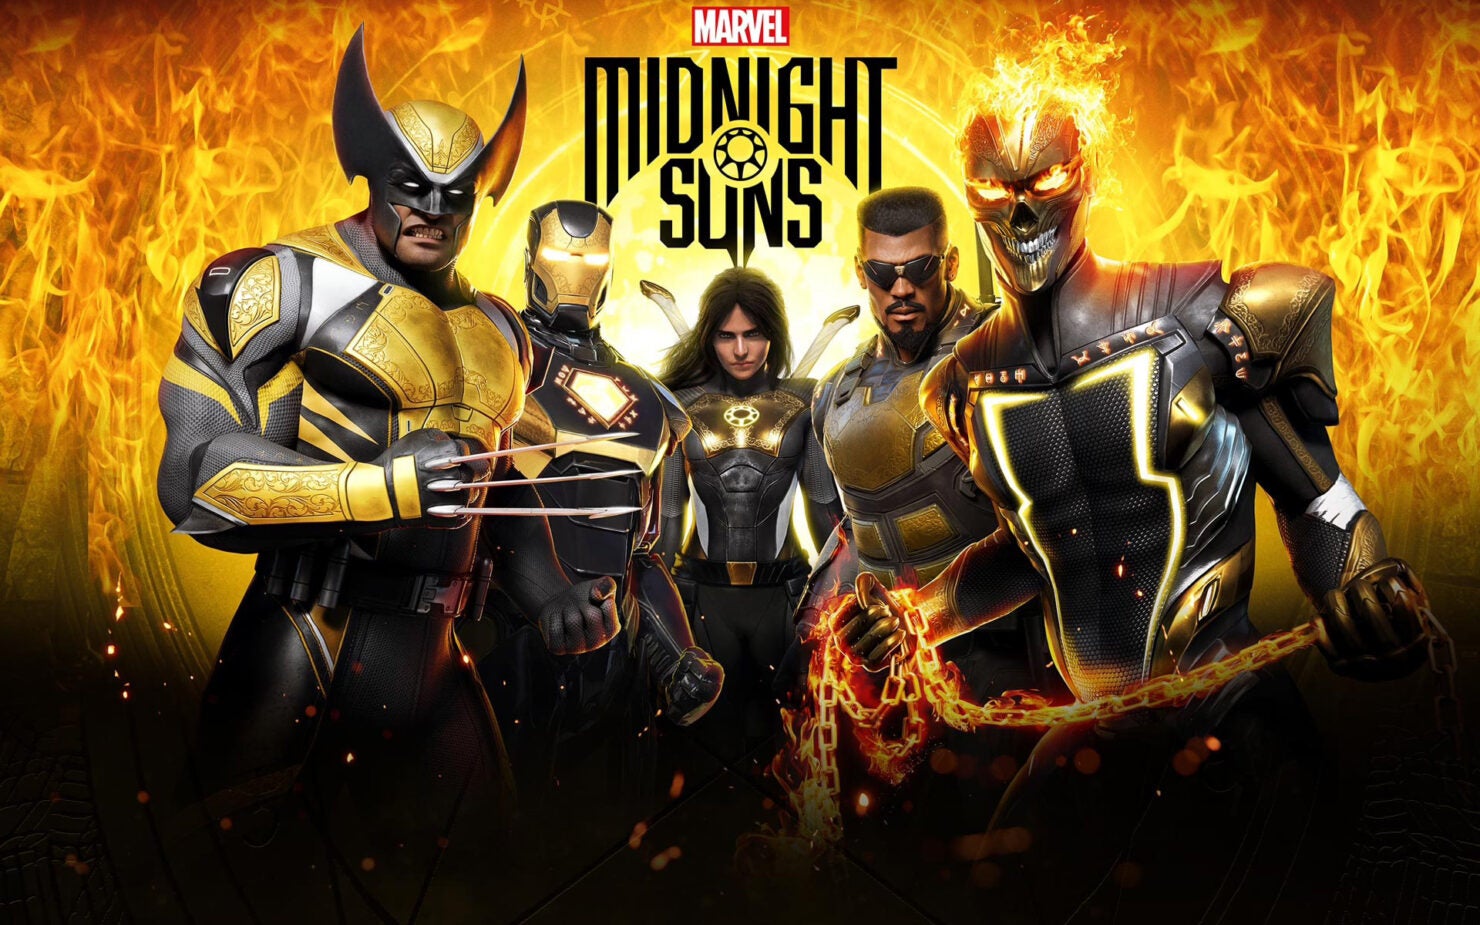 Image for Podrobněji o Wolverine z Midnight Suns